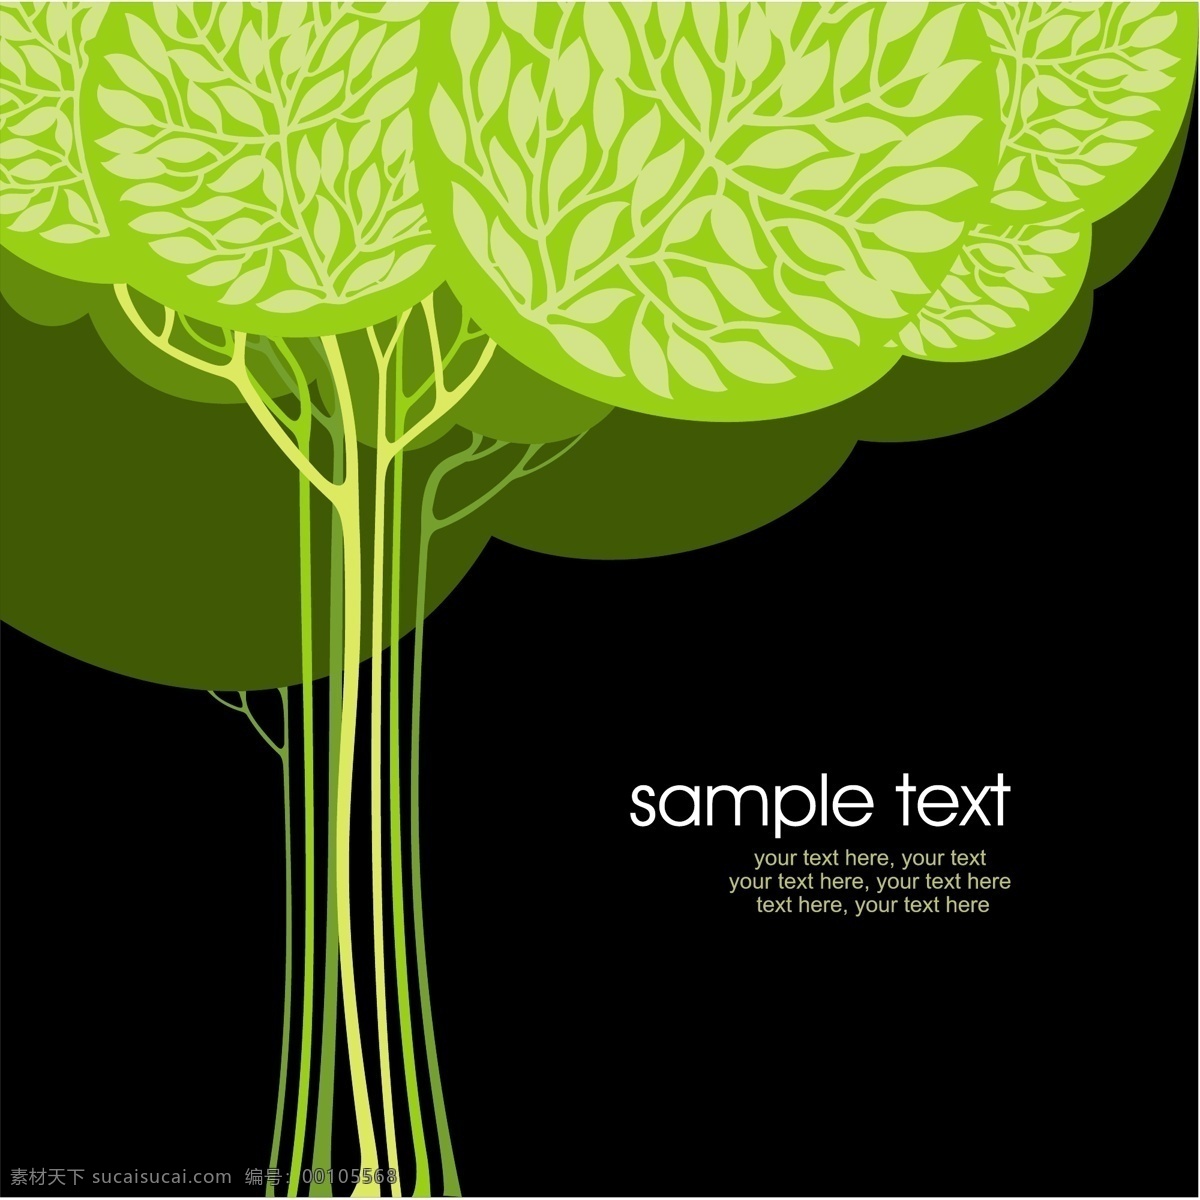 摘要 黑色 背景 矢量 树 绿 web 插画 创意 免费 图形 质量 病 媒 生物 时尚 独特的 原始的 高质量 新鲜的 设计新的 程式化的树 摘要树 黑色的背景 psd源文件